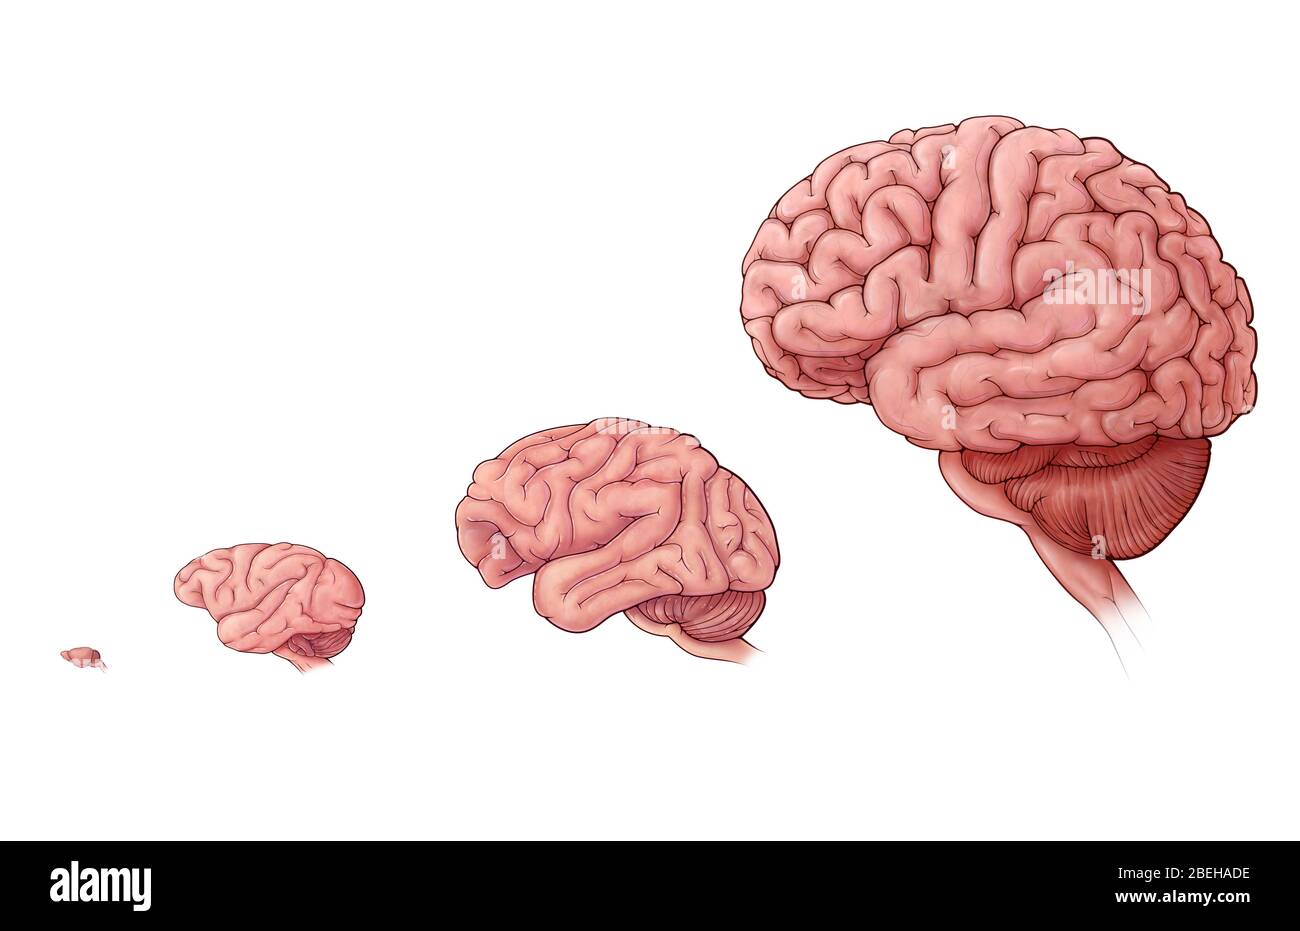 Vergleich Der Gehirngröße Stockfoto